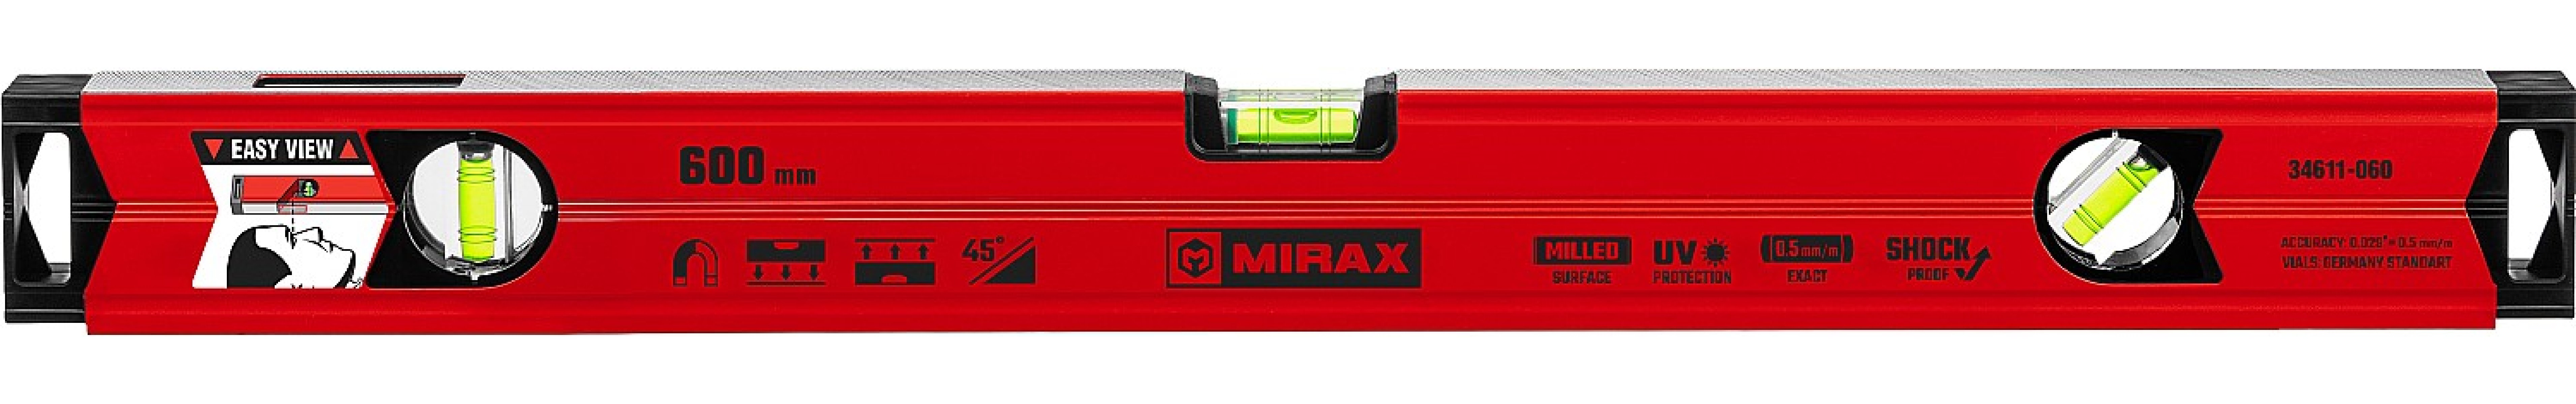    MIRAX 600  (34611-060)